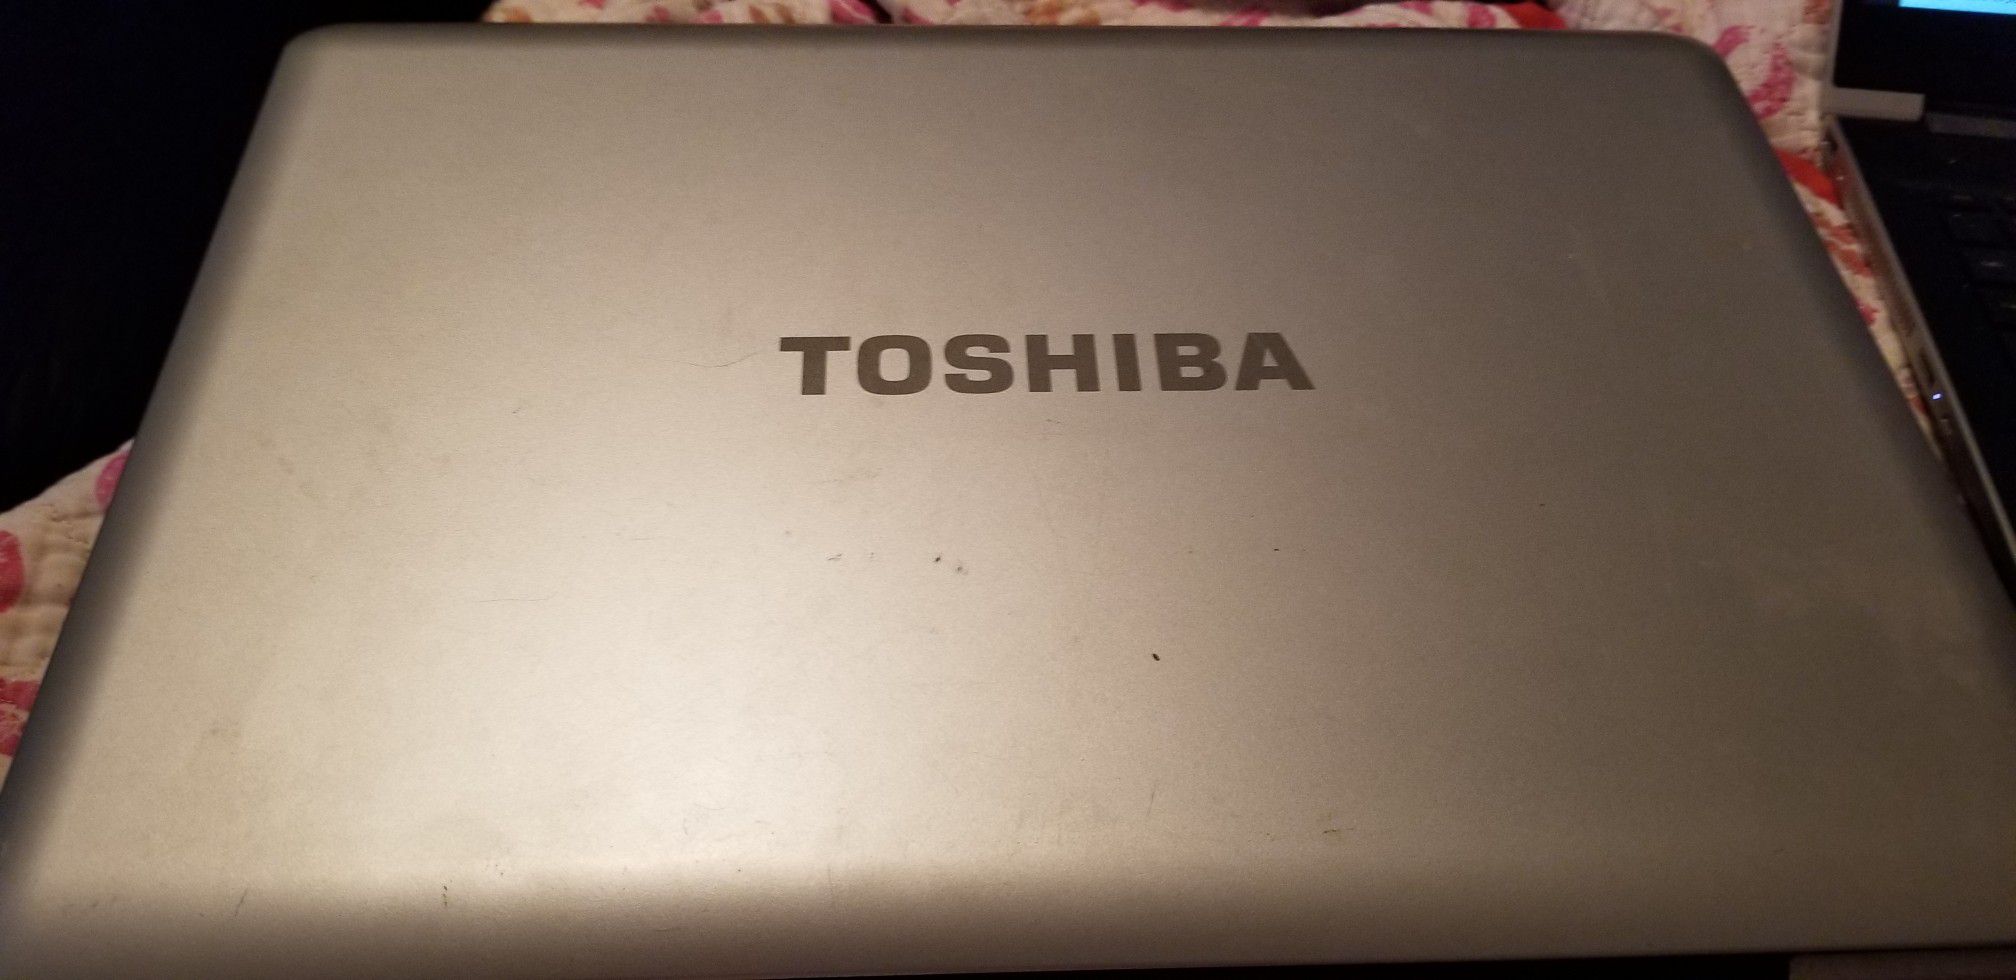 Toshiba laptop USED